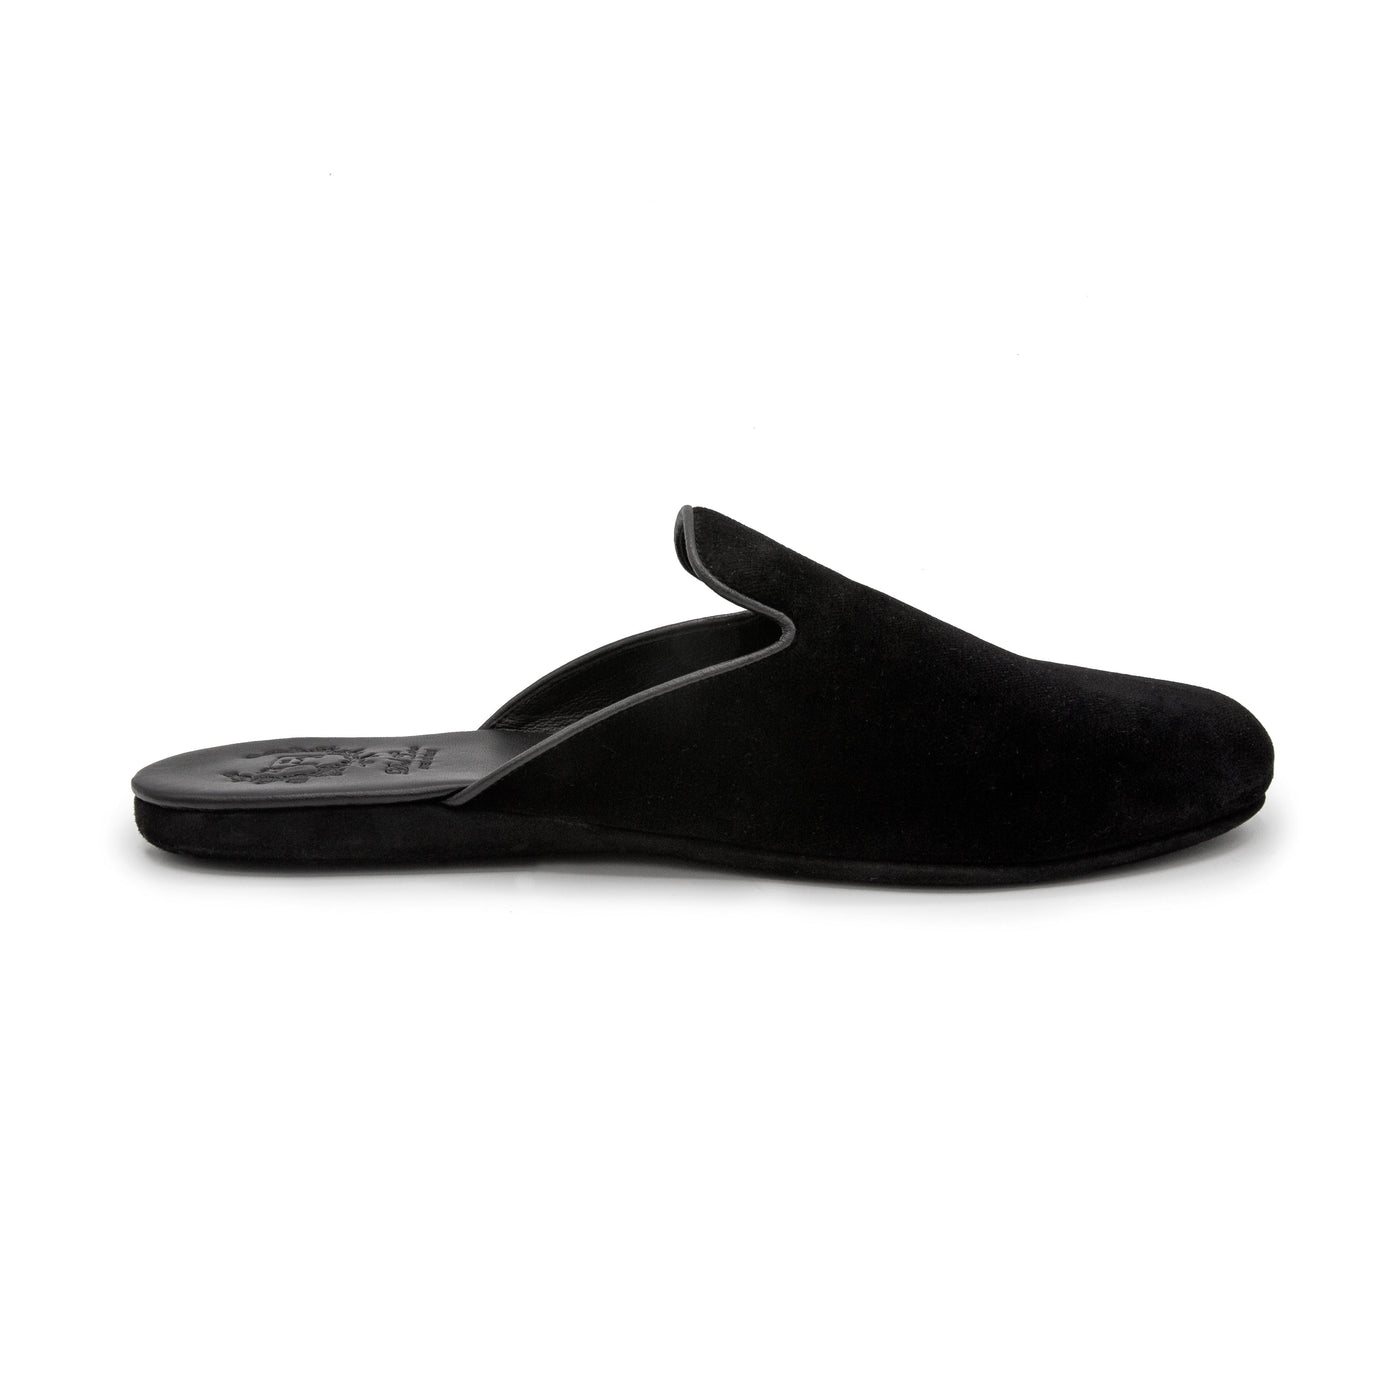 Men's Black Velvet House Slipper by Del Toro Shoes